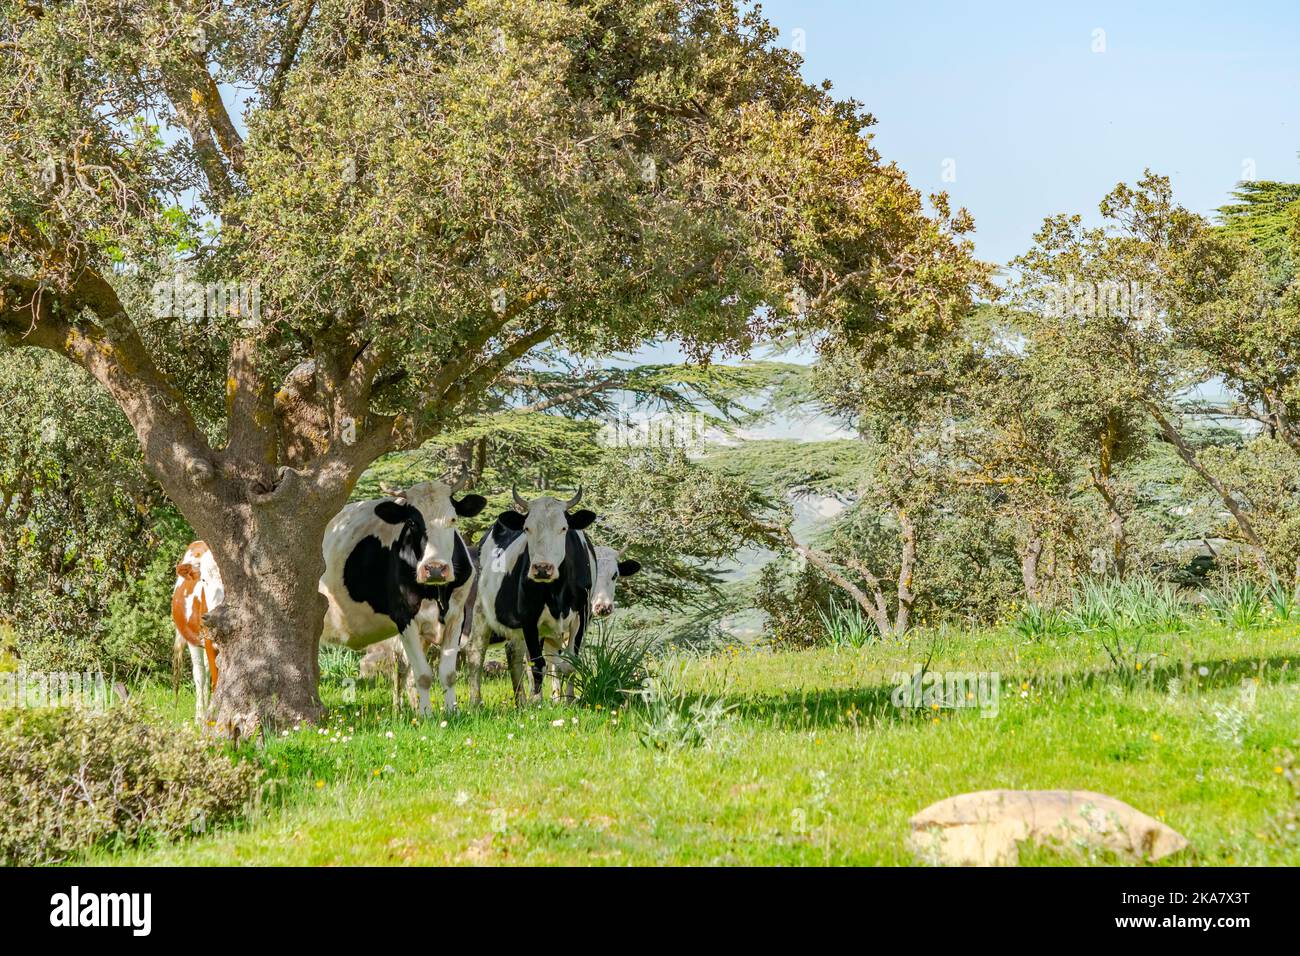 Quattro mucche in piedi davanti alla macchina fotografica e dietro un albero in un prato con erbe verdi, alberi e un cielo blu. Foto Stock